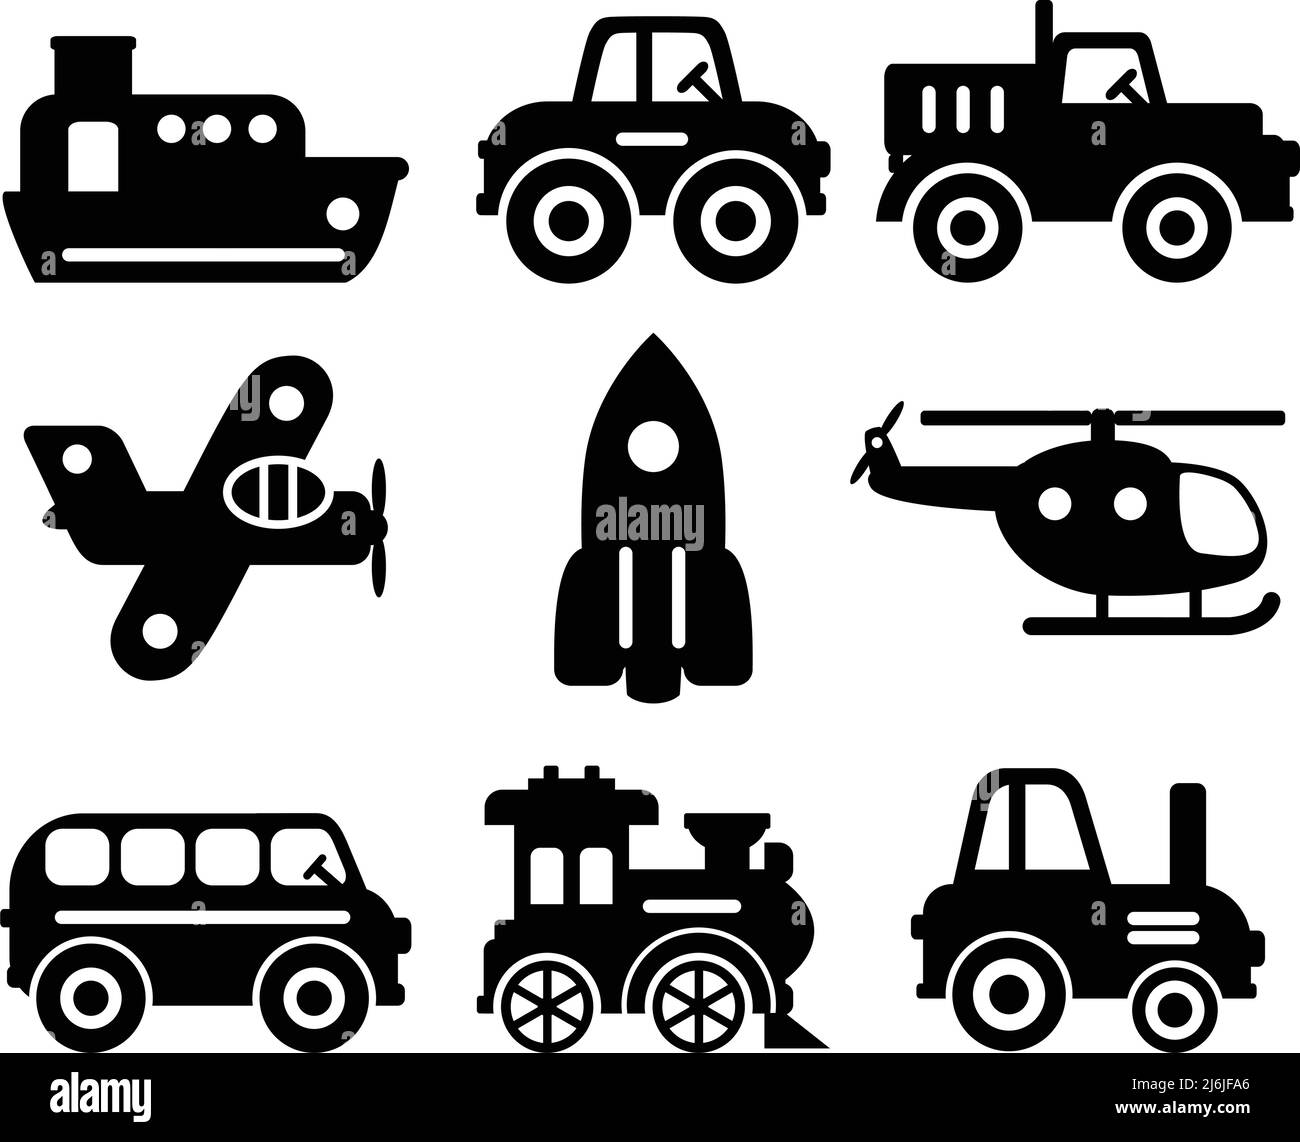 Verschiedene Arten von Spielzeug Transport auf weißem Hintergrund. Vektorgrafik Stock Vektor